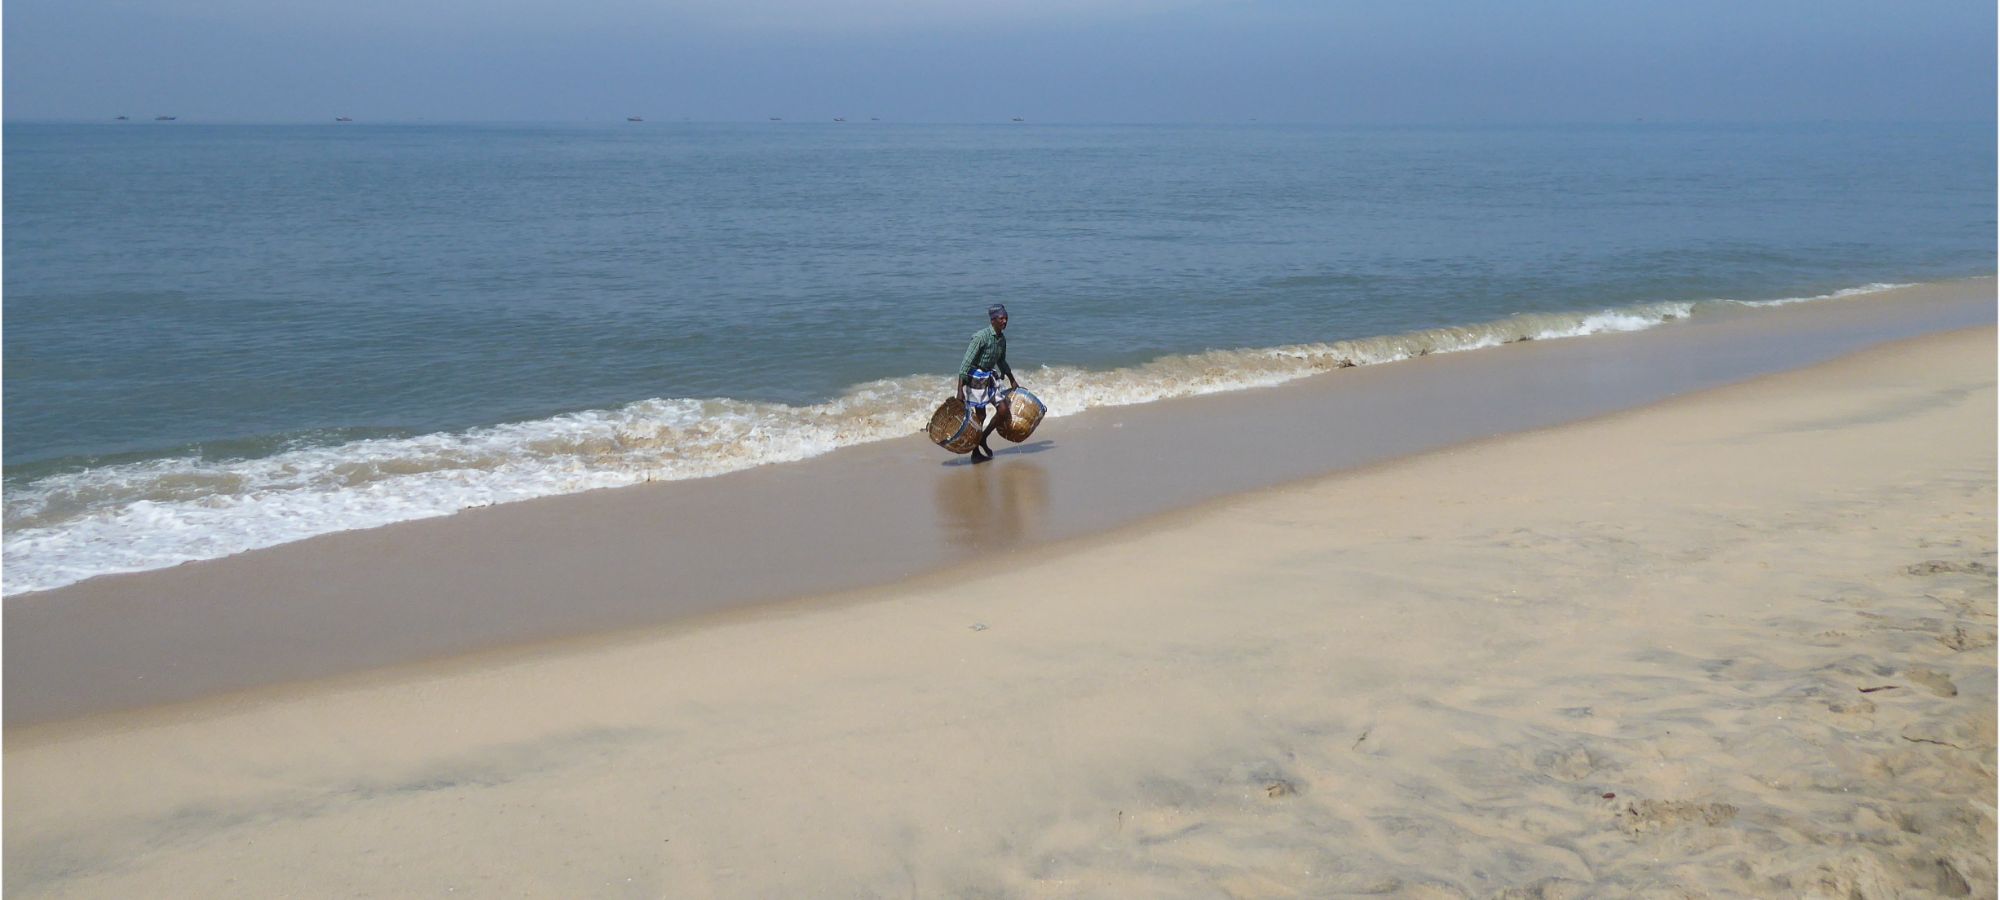 Cycling Holidays - Kerala - Tamil Nadu 